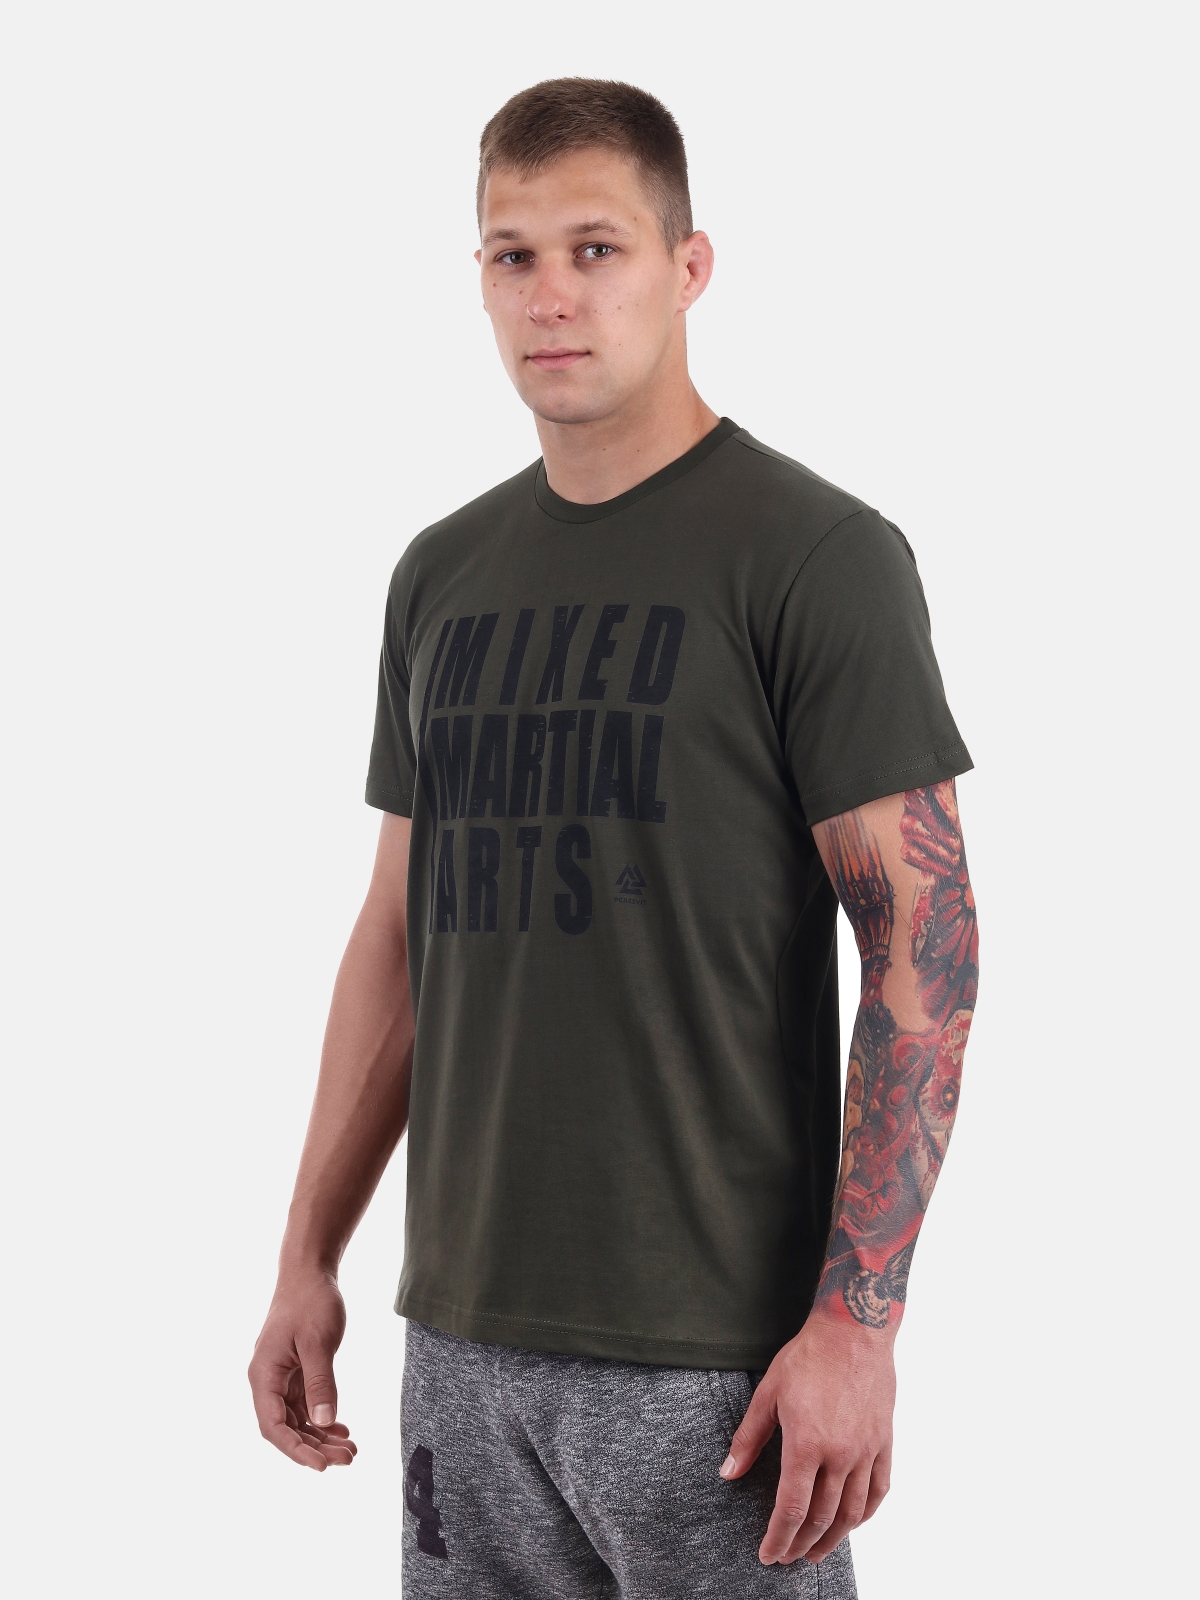 Peresvit MMA T-Shirt Military Green, Photo No. 2